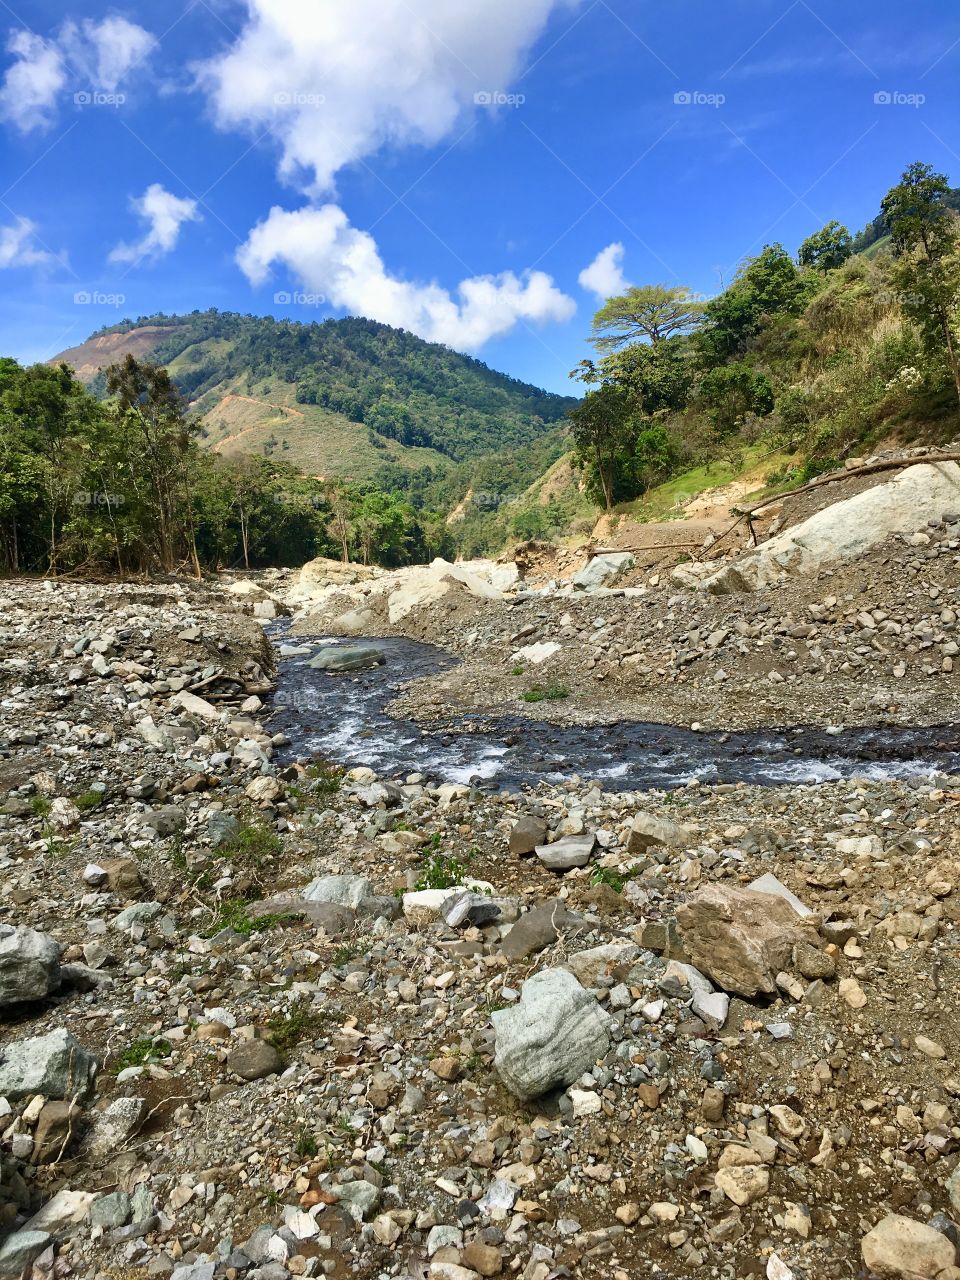 Los Julianes Waterfall, Santa María de Dota, Costa Rica 